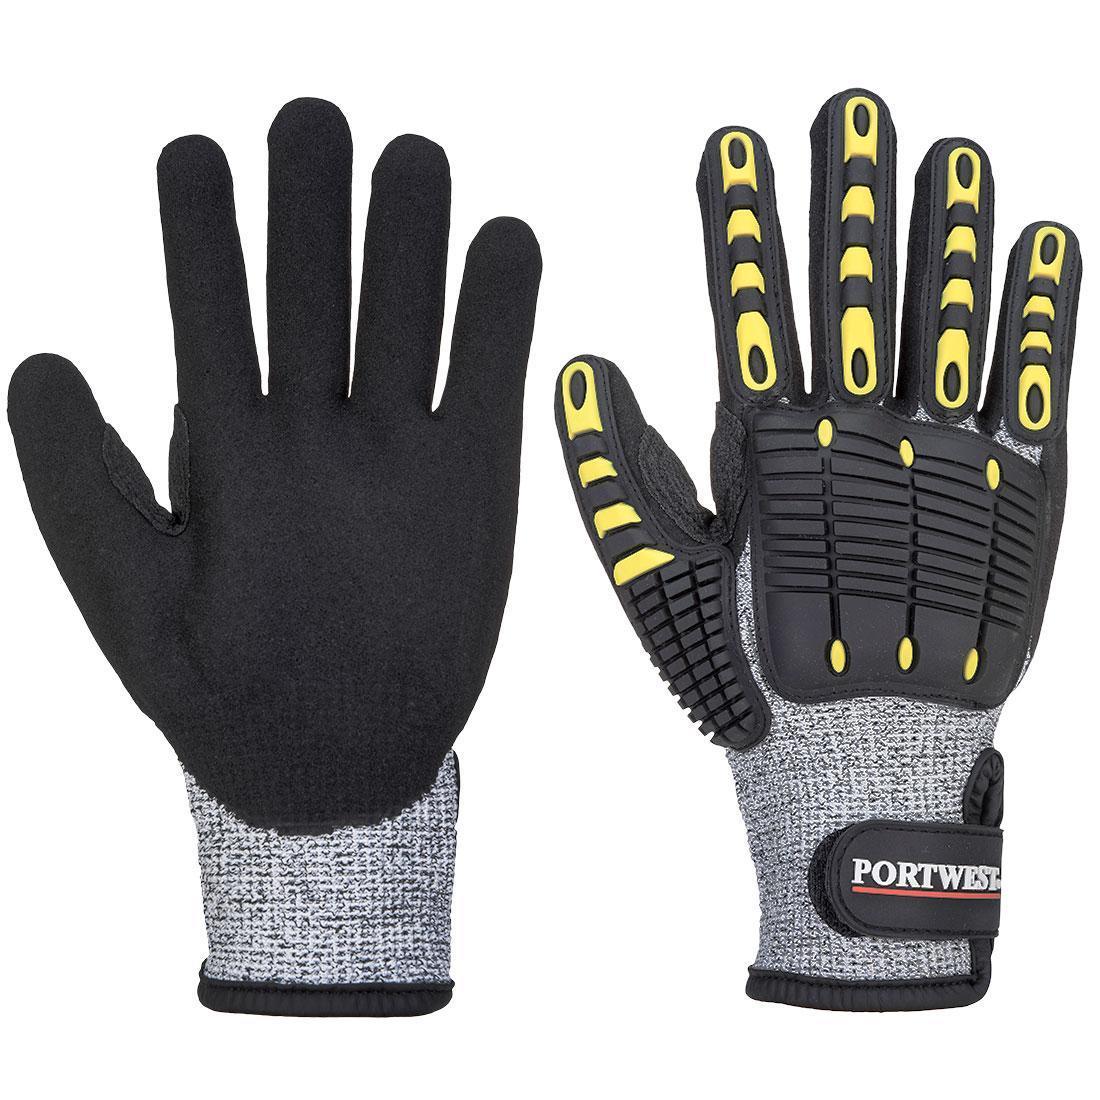 Portwest Unisex Adult A772 Impact Resistant Cut Resistant Glove (Grey/Black) (M)